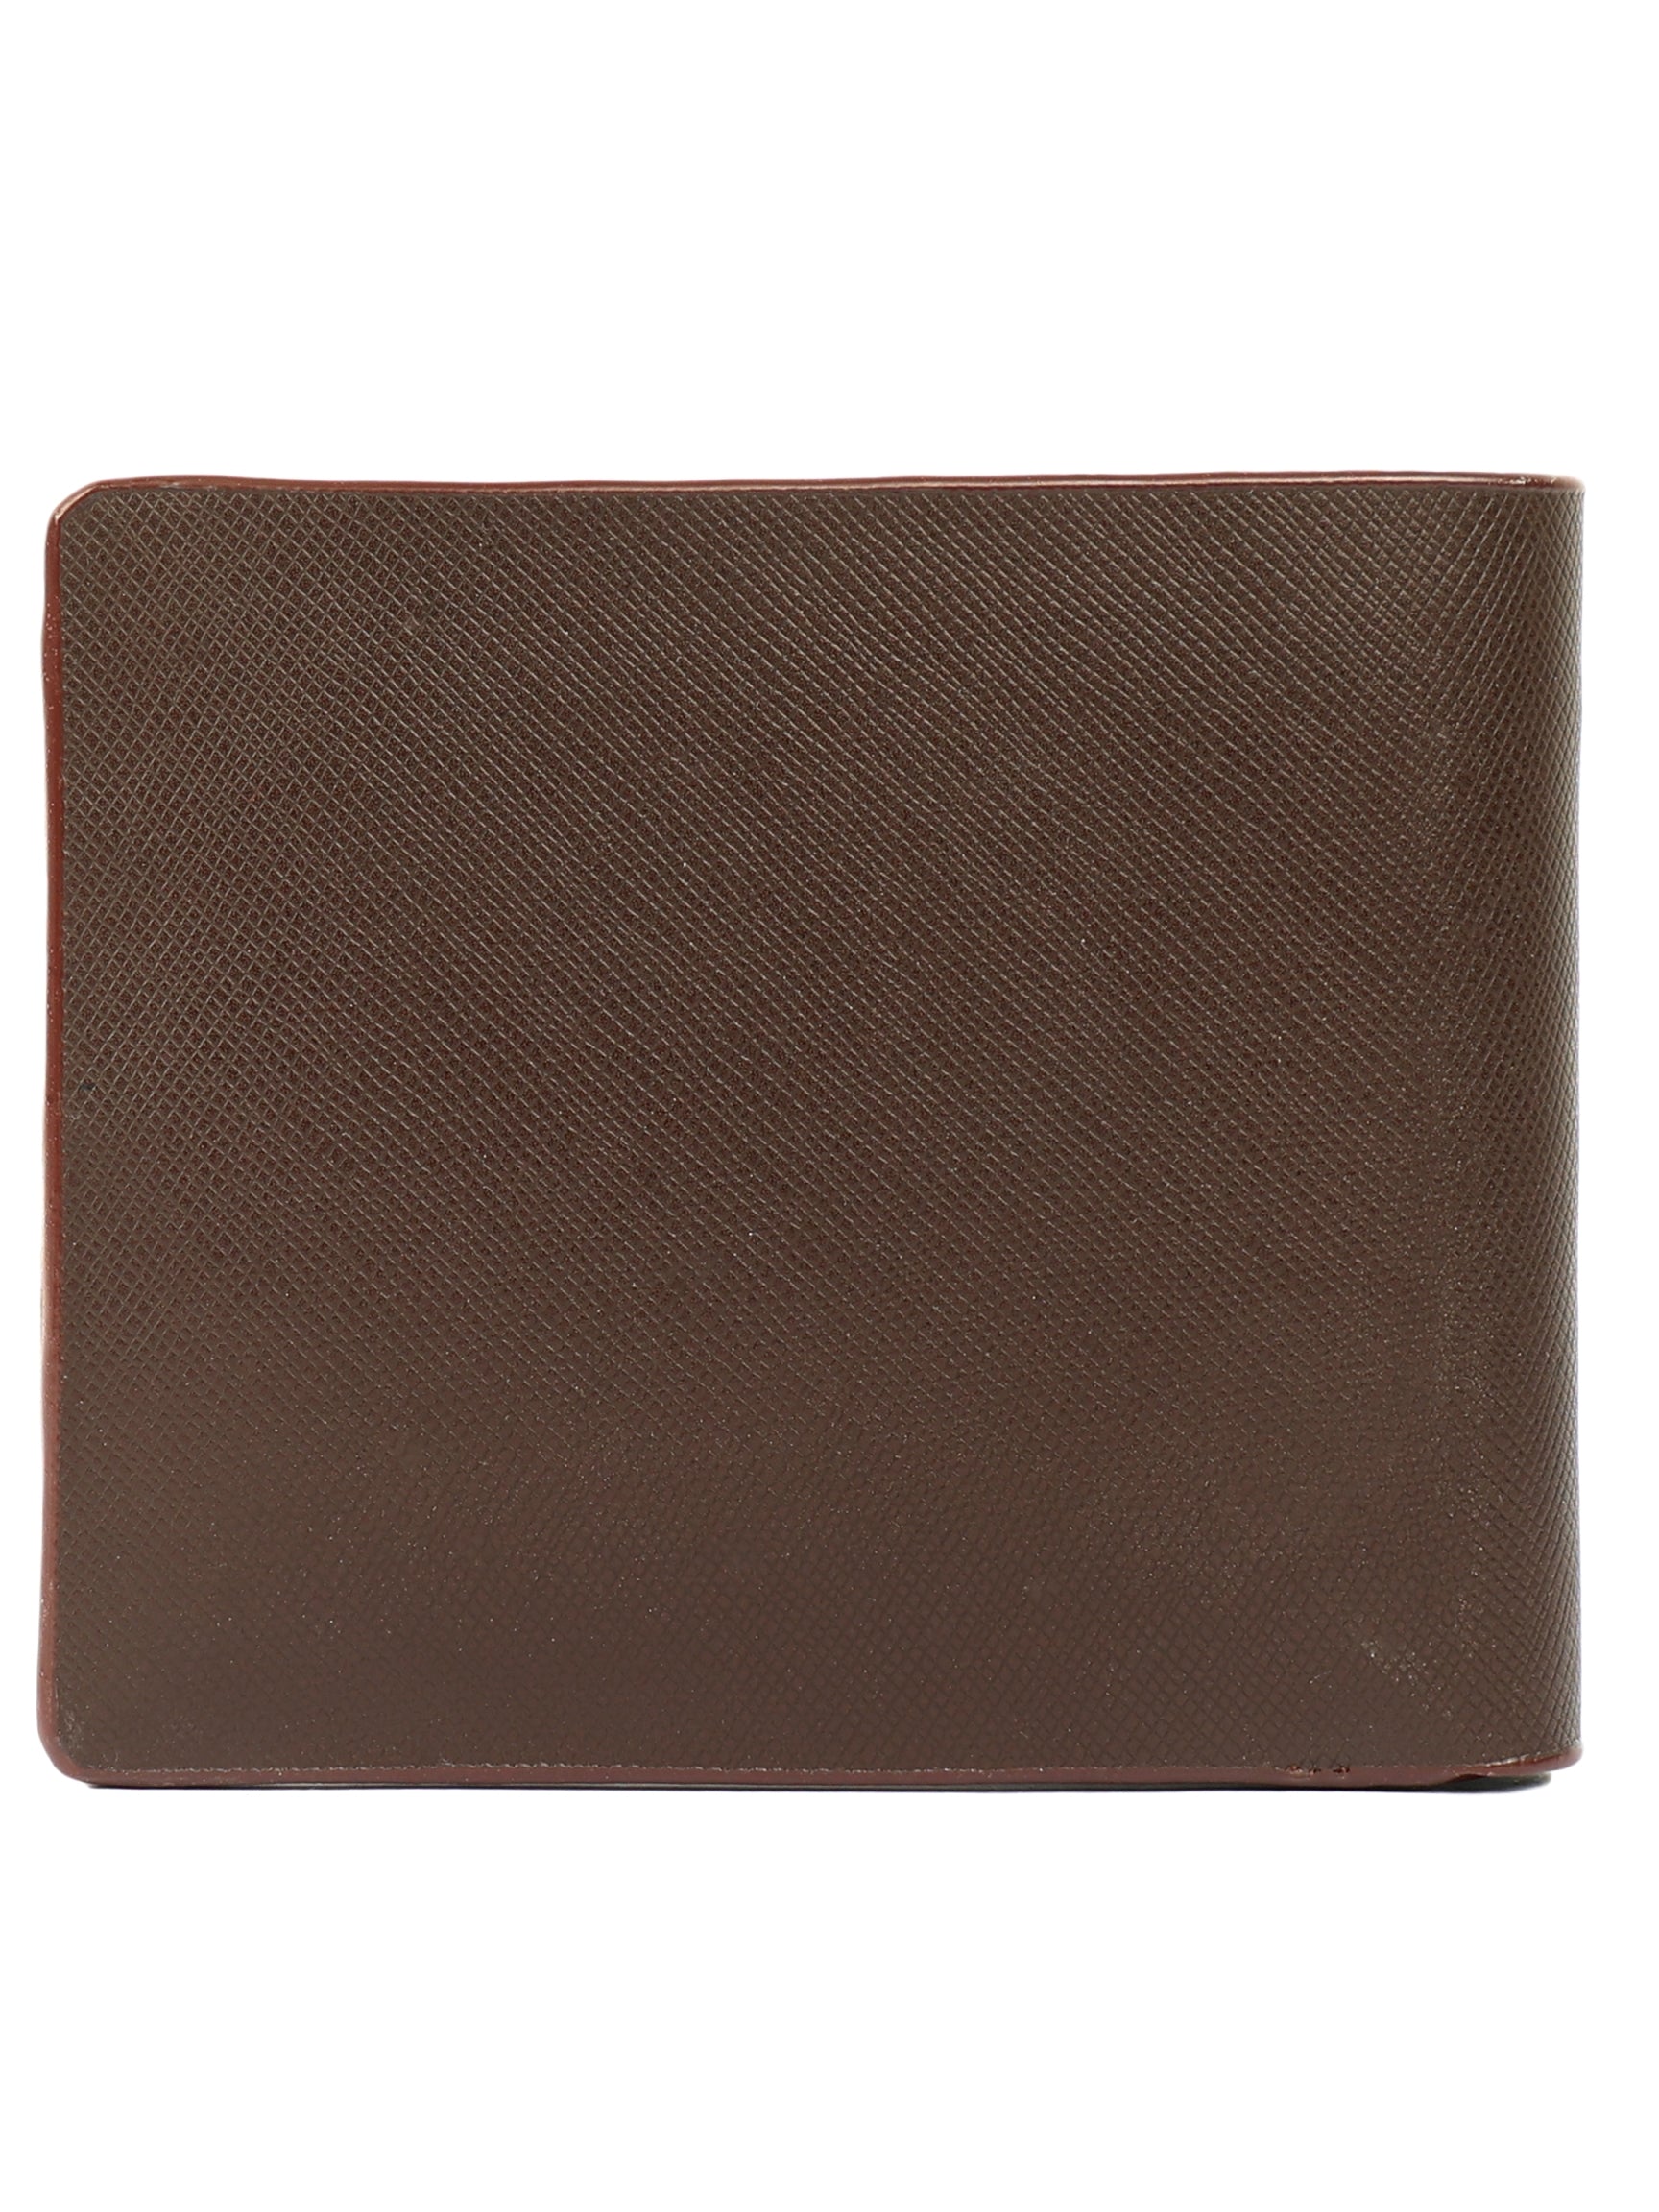 Diesel Brown Color Leather Purse SKU - 65114